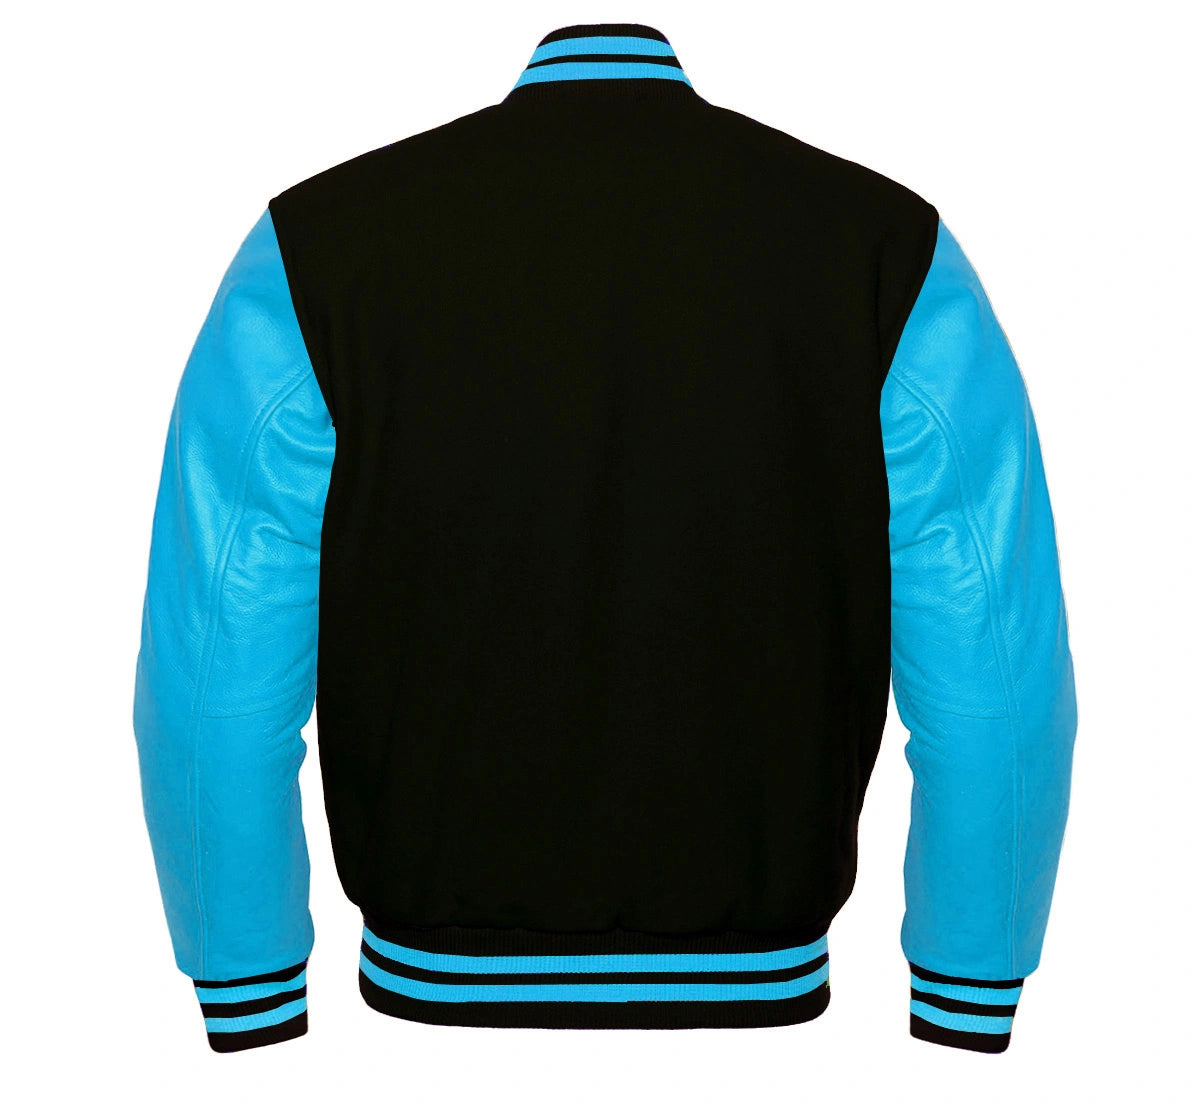 Black and blue Varsity Jacket (Back side)